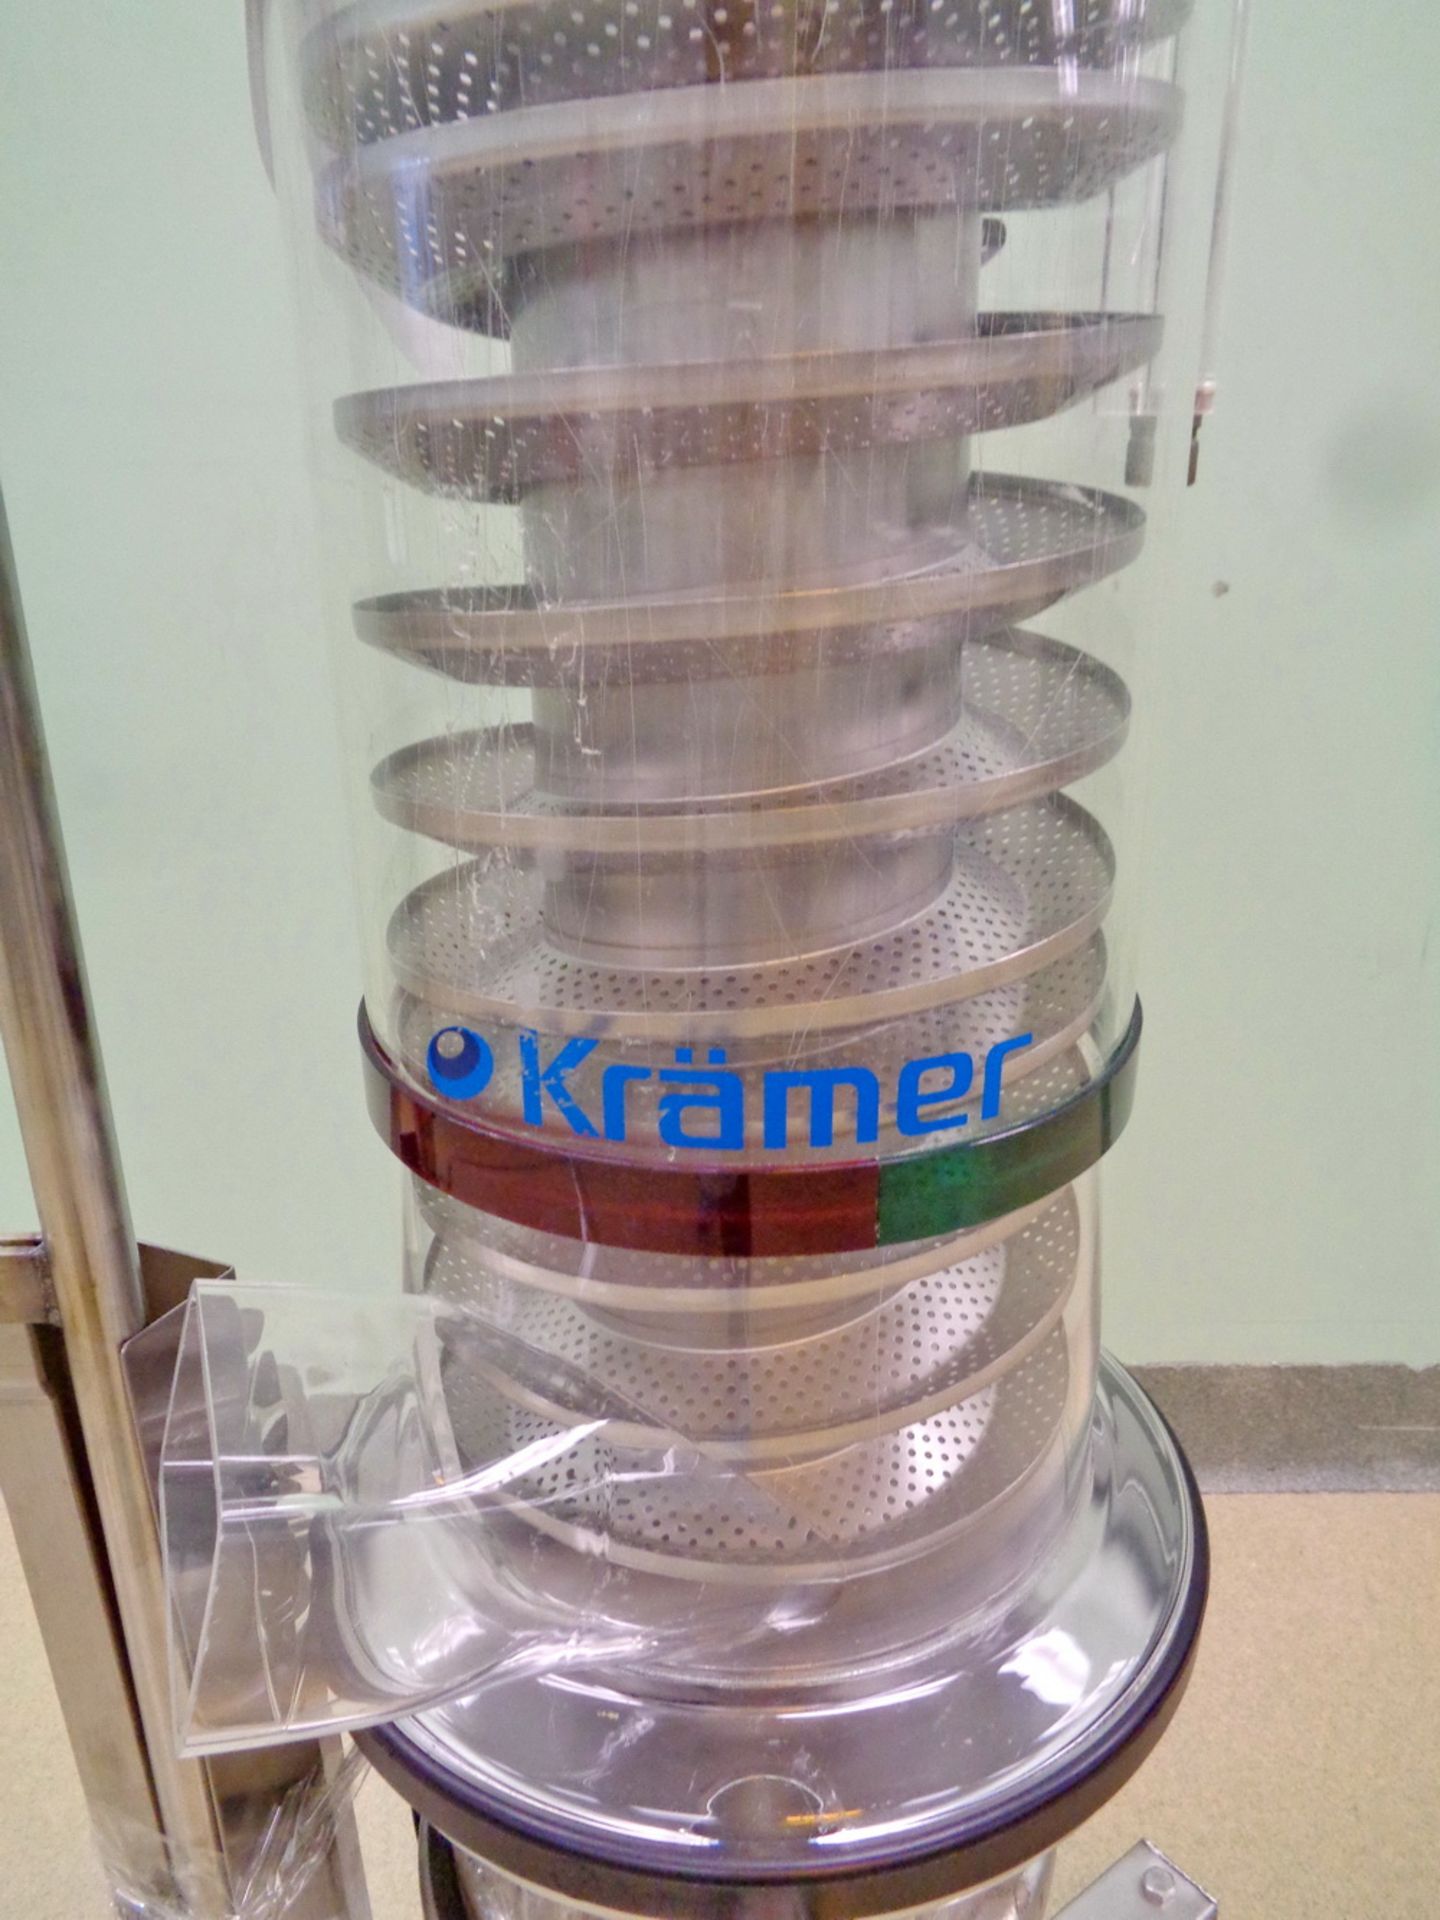 Kramer Vertical Stainless Steel Tablet Deduster, Model E92-500, S/N 1-152, portable - Image 2 of 4